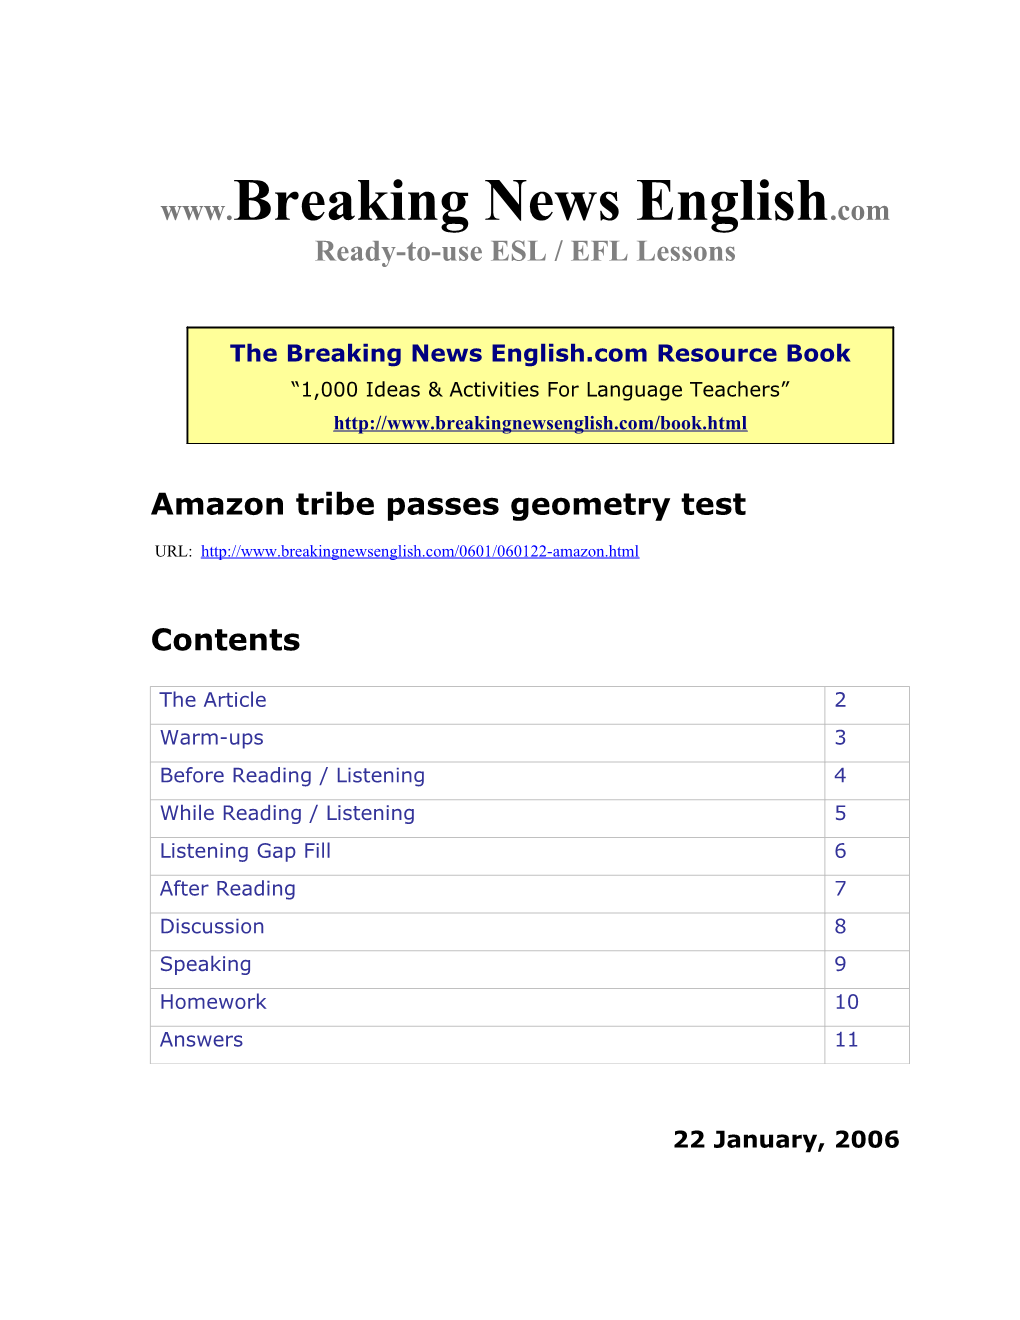 Amazon Tribe Passes Geometry Test